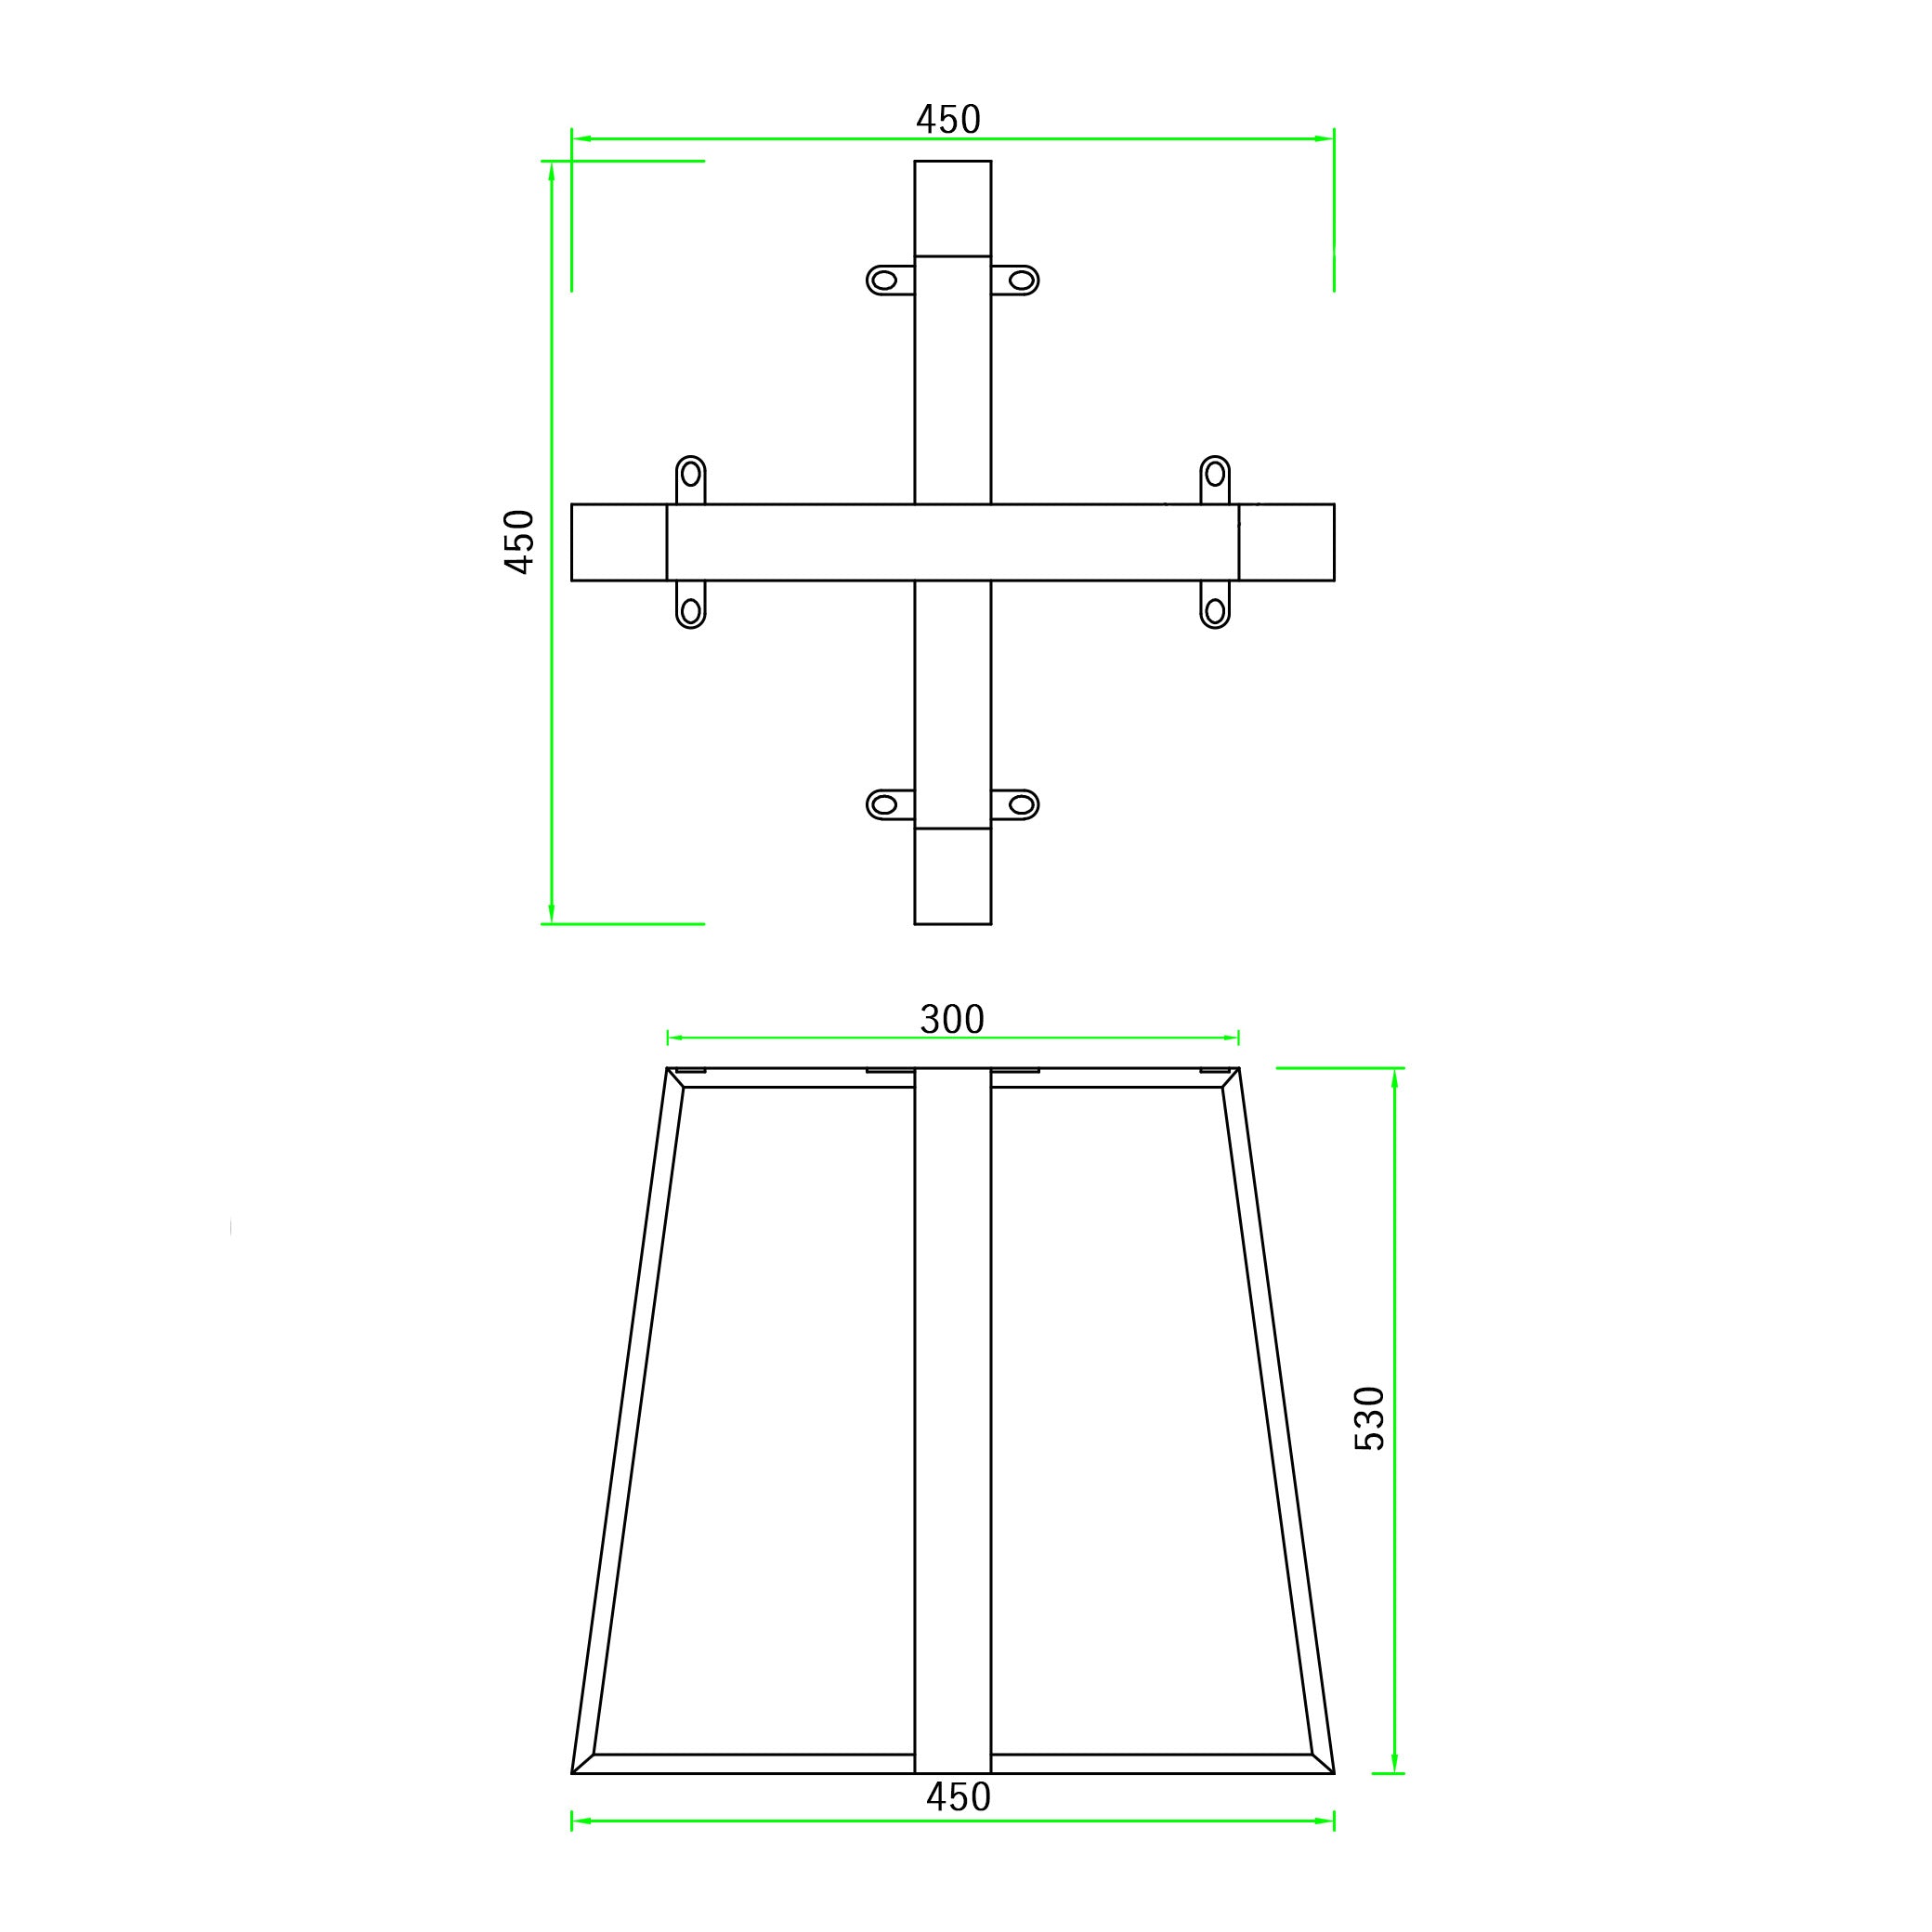 テーブル脚 サイドX型 奥行450×高さ530mm - 清水材木店